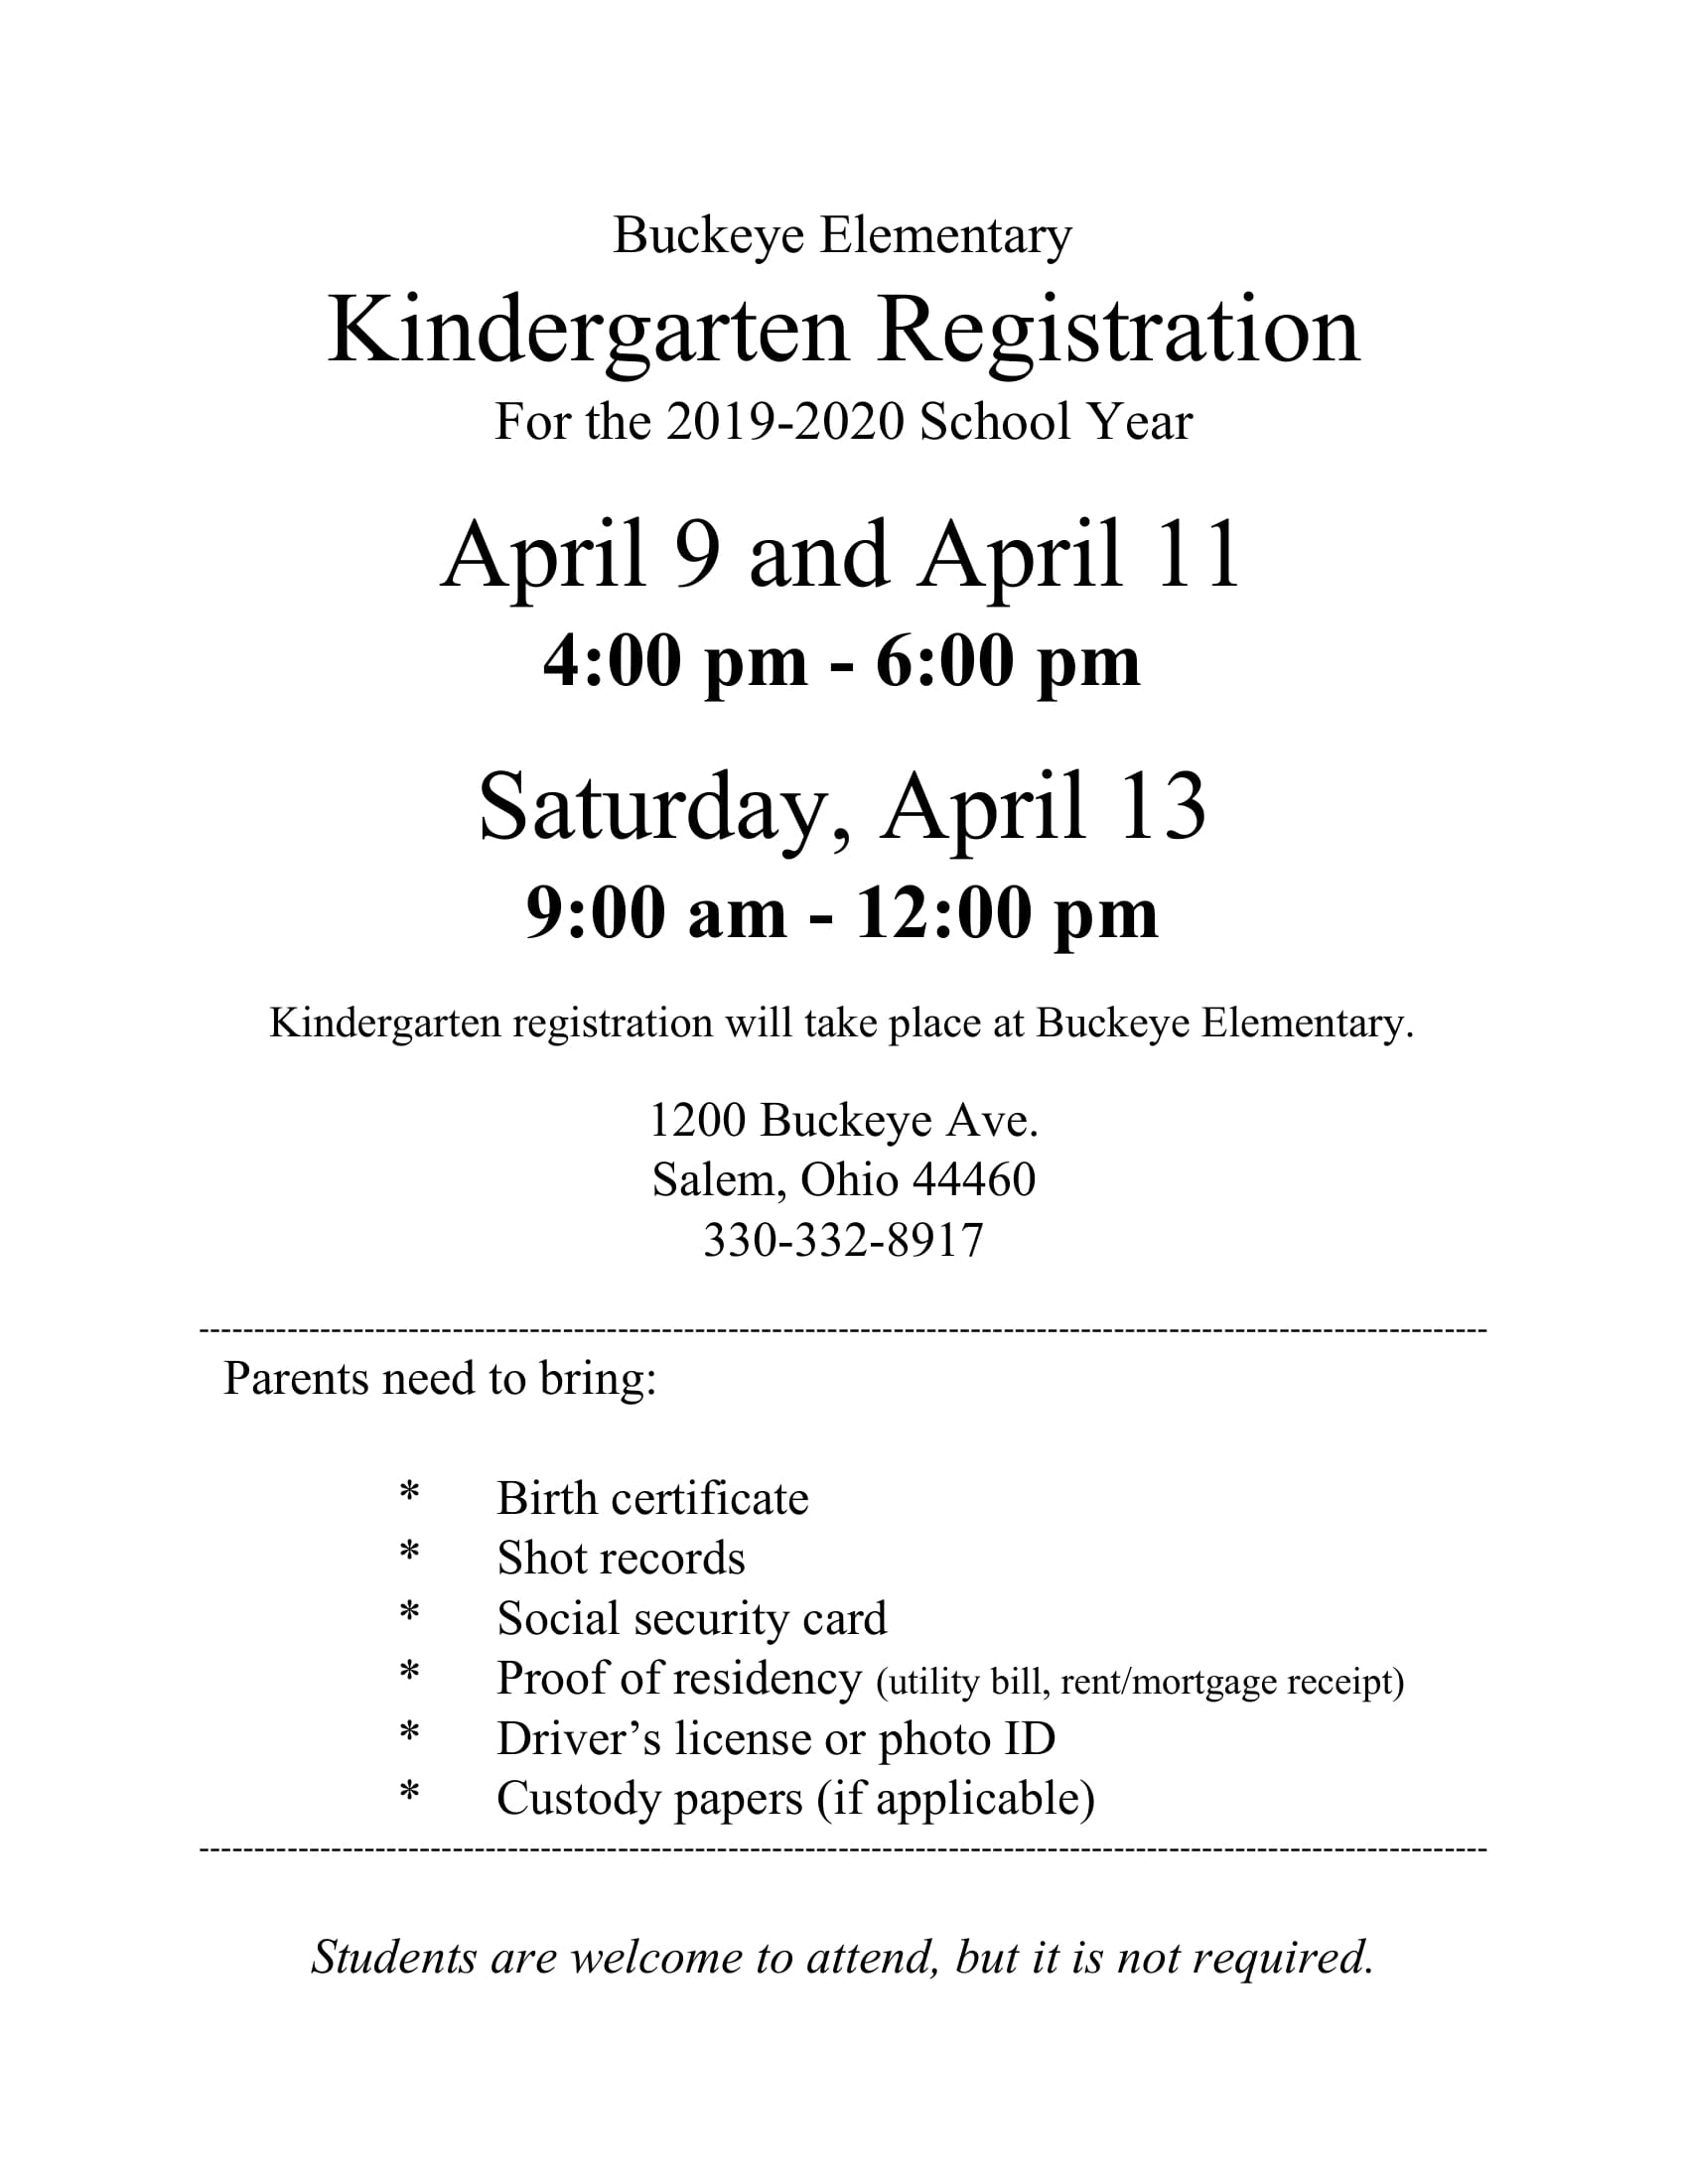 KG Registration